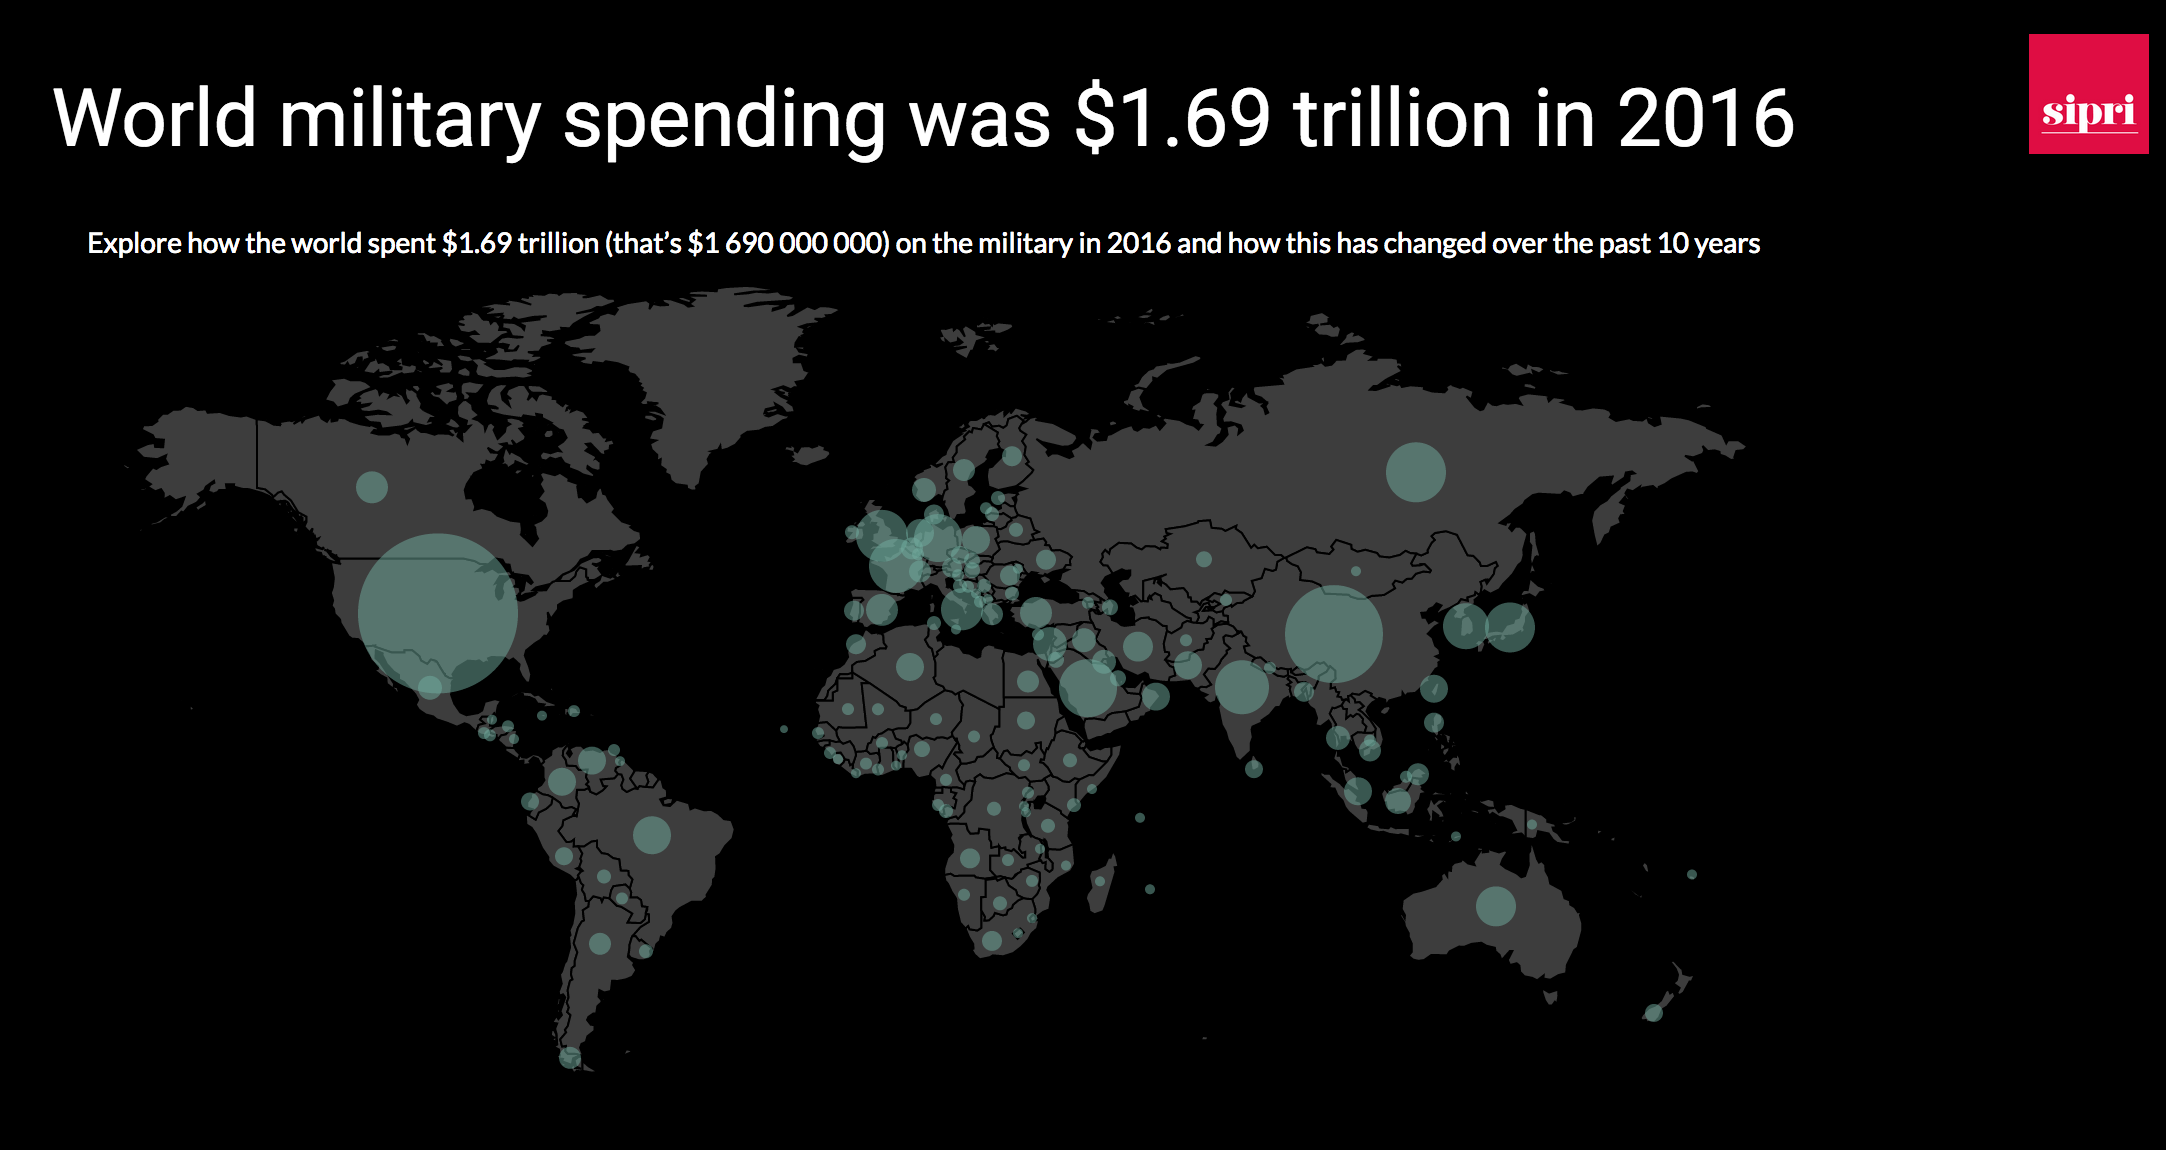 SIPRI publica les dades actualitzades sobre la despesa militar mundial